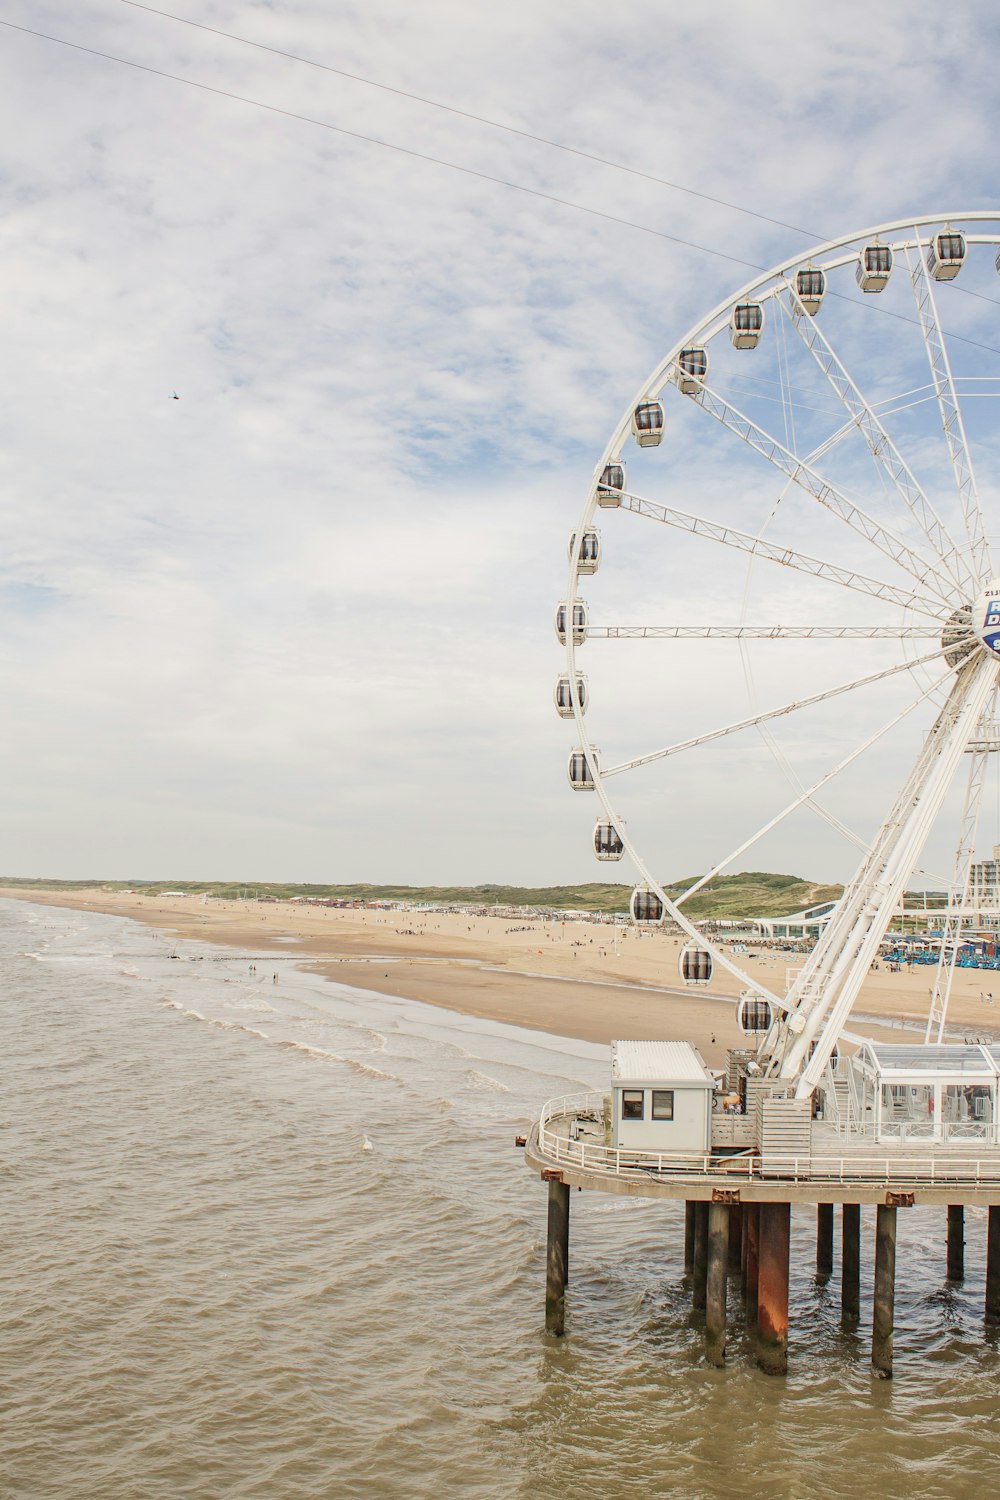 a ferris wheel on a pier